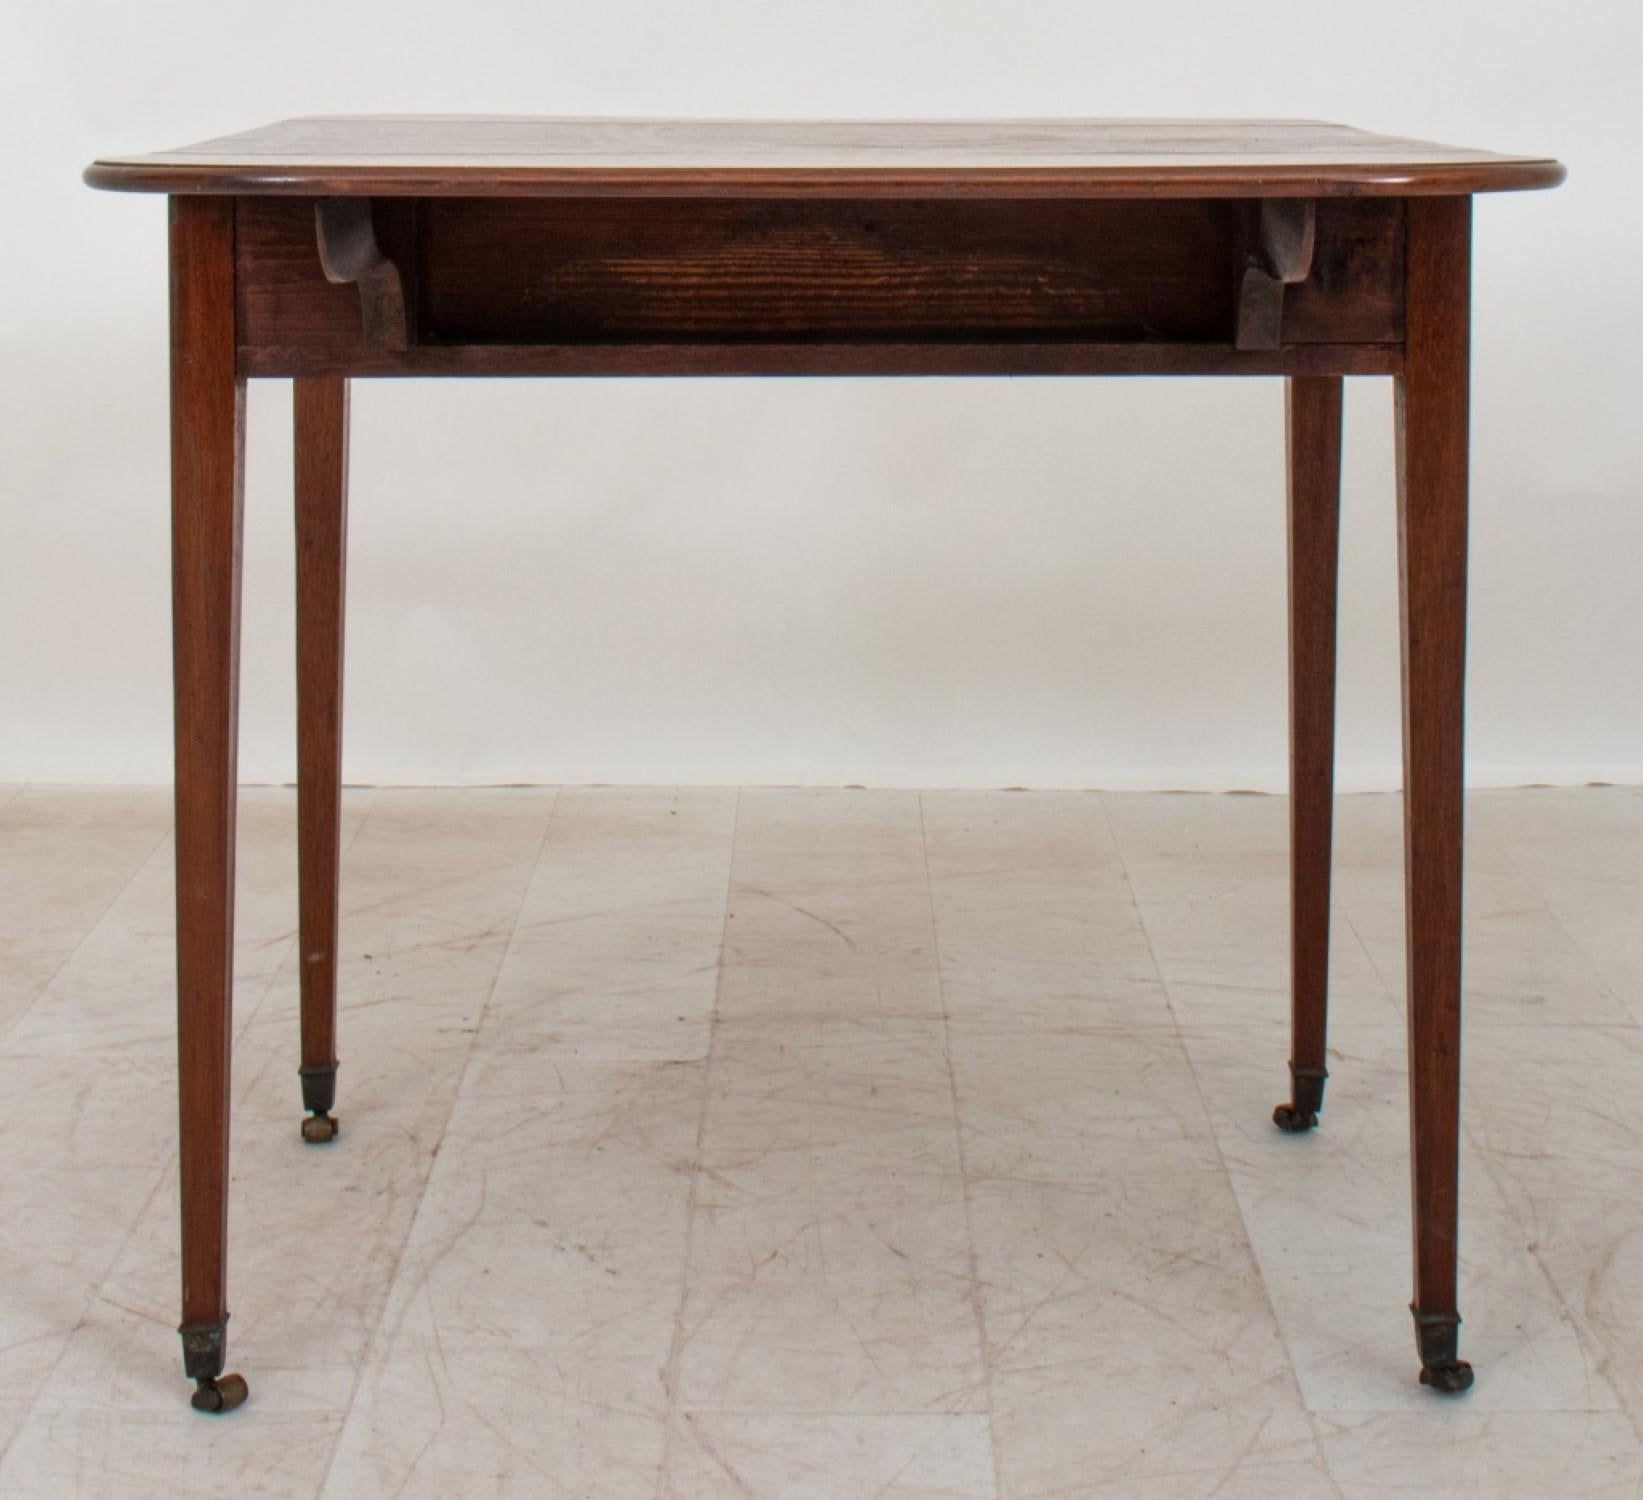 Der Pembroke-Tisch aus Mahagoni im Stil von George III. hat eine rechteckige Platte und geformte Fallblätter. An der Seite befindet sich eine Schublade über spitz zulaufenden Vierkantbeinen. 

Händler: S138XX



